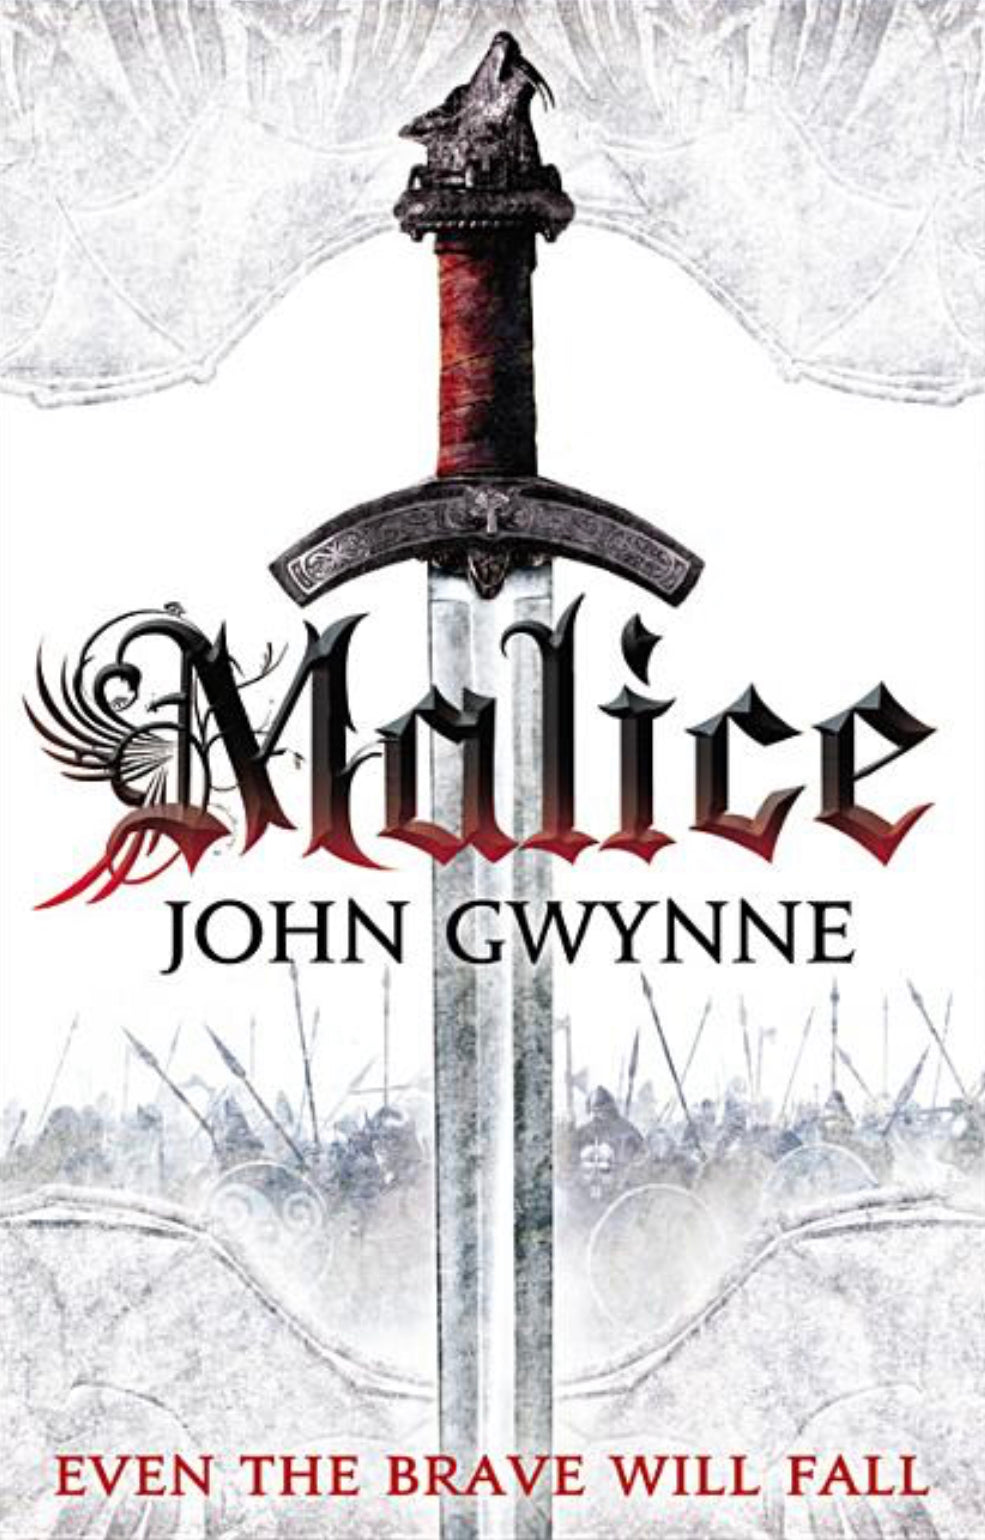 Malice - John Gwynne